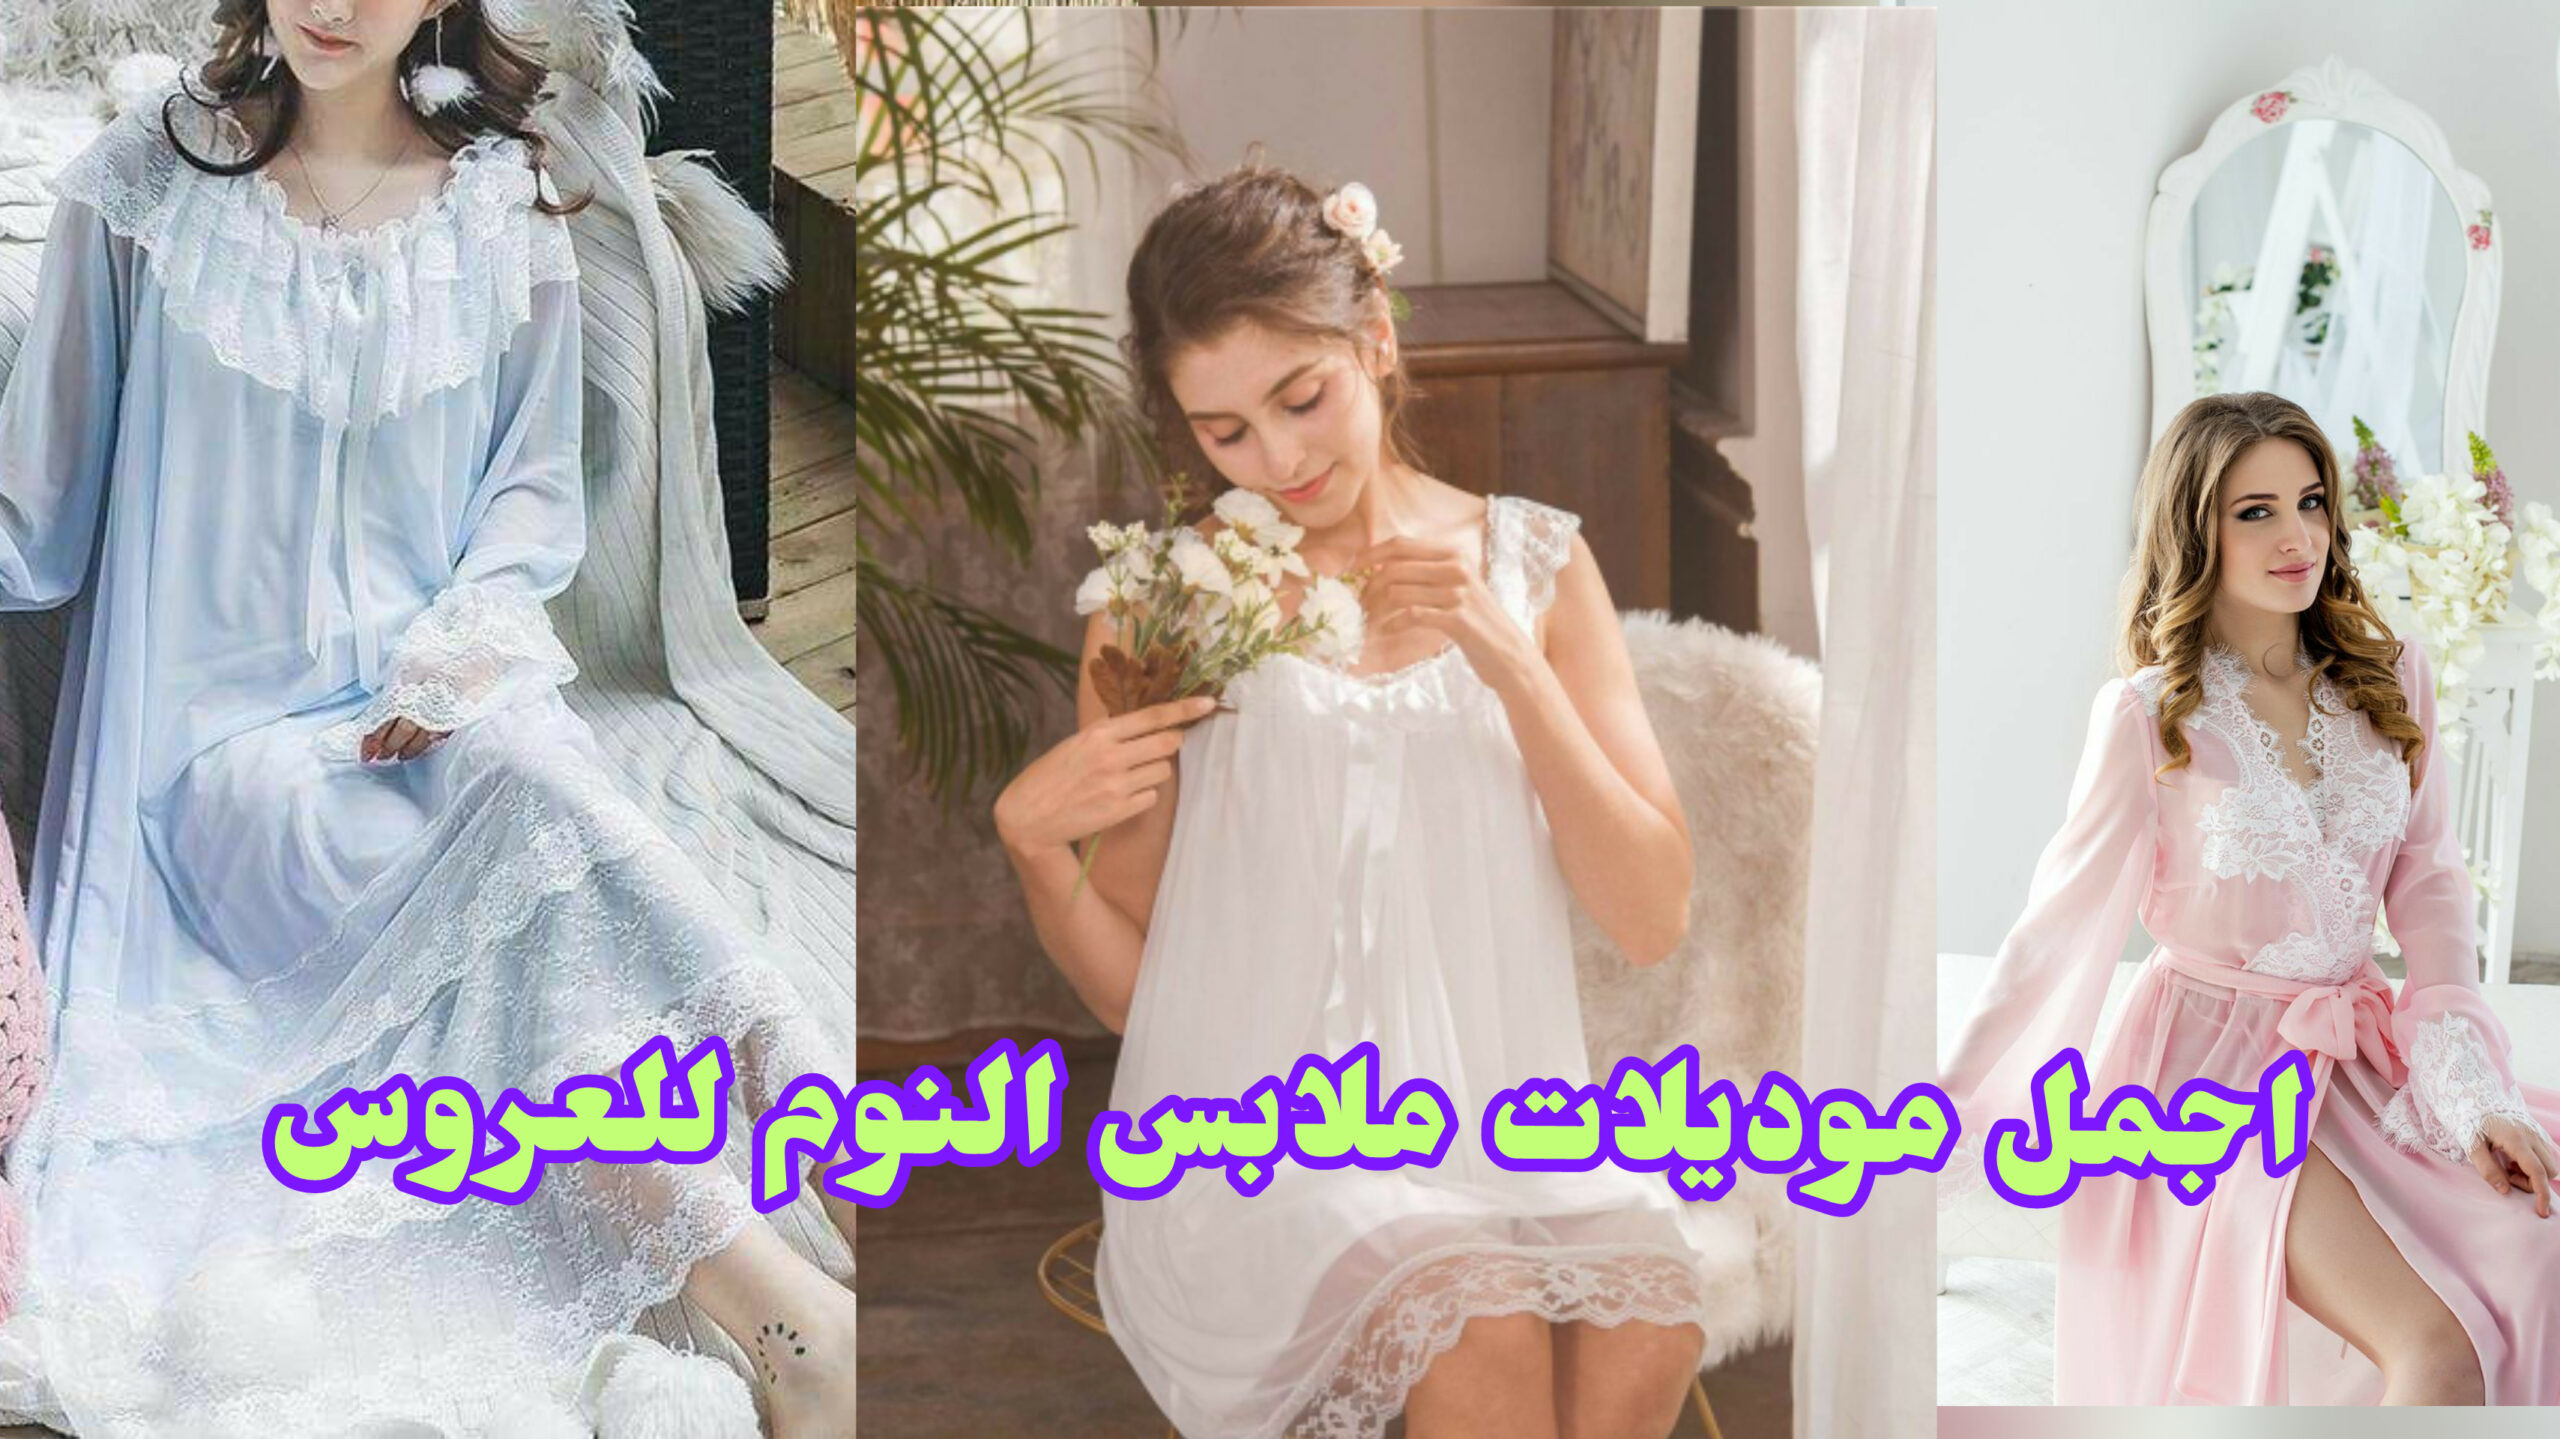 موديلات جديدة ملابس نوم للعروس ، اجمل اشكال ملابس النوم